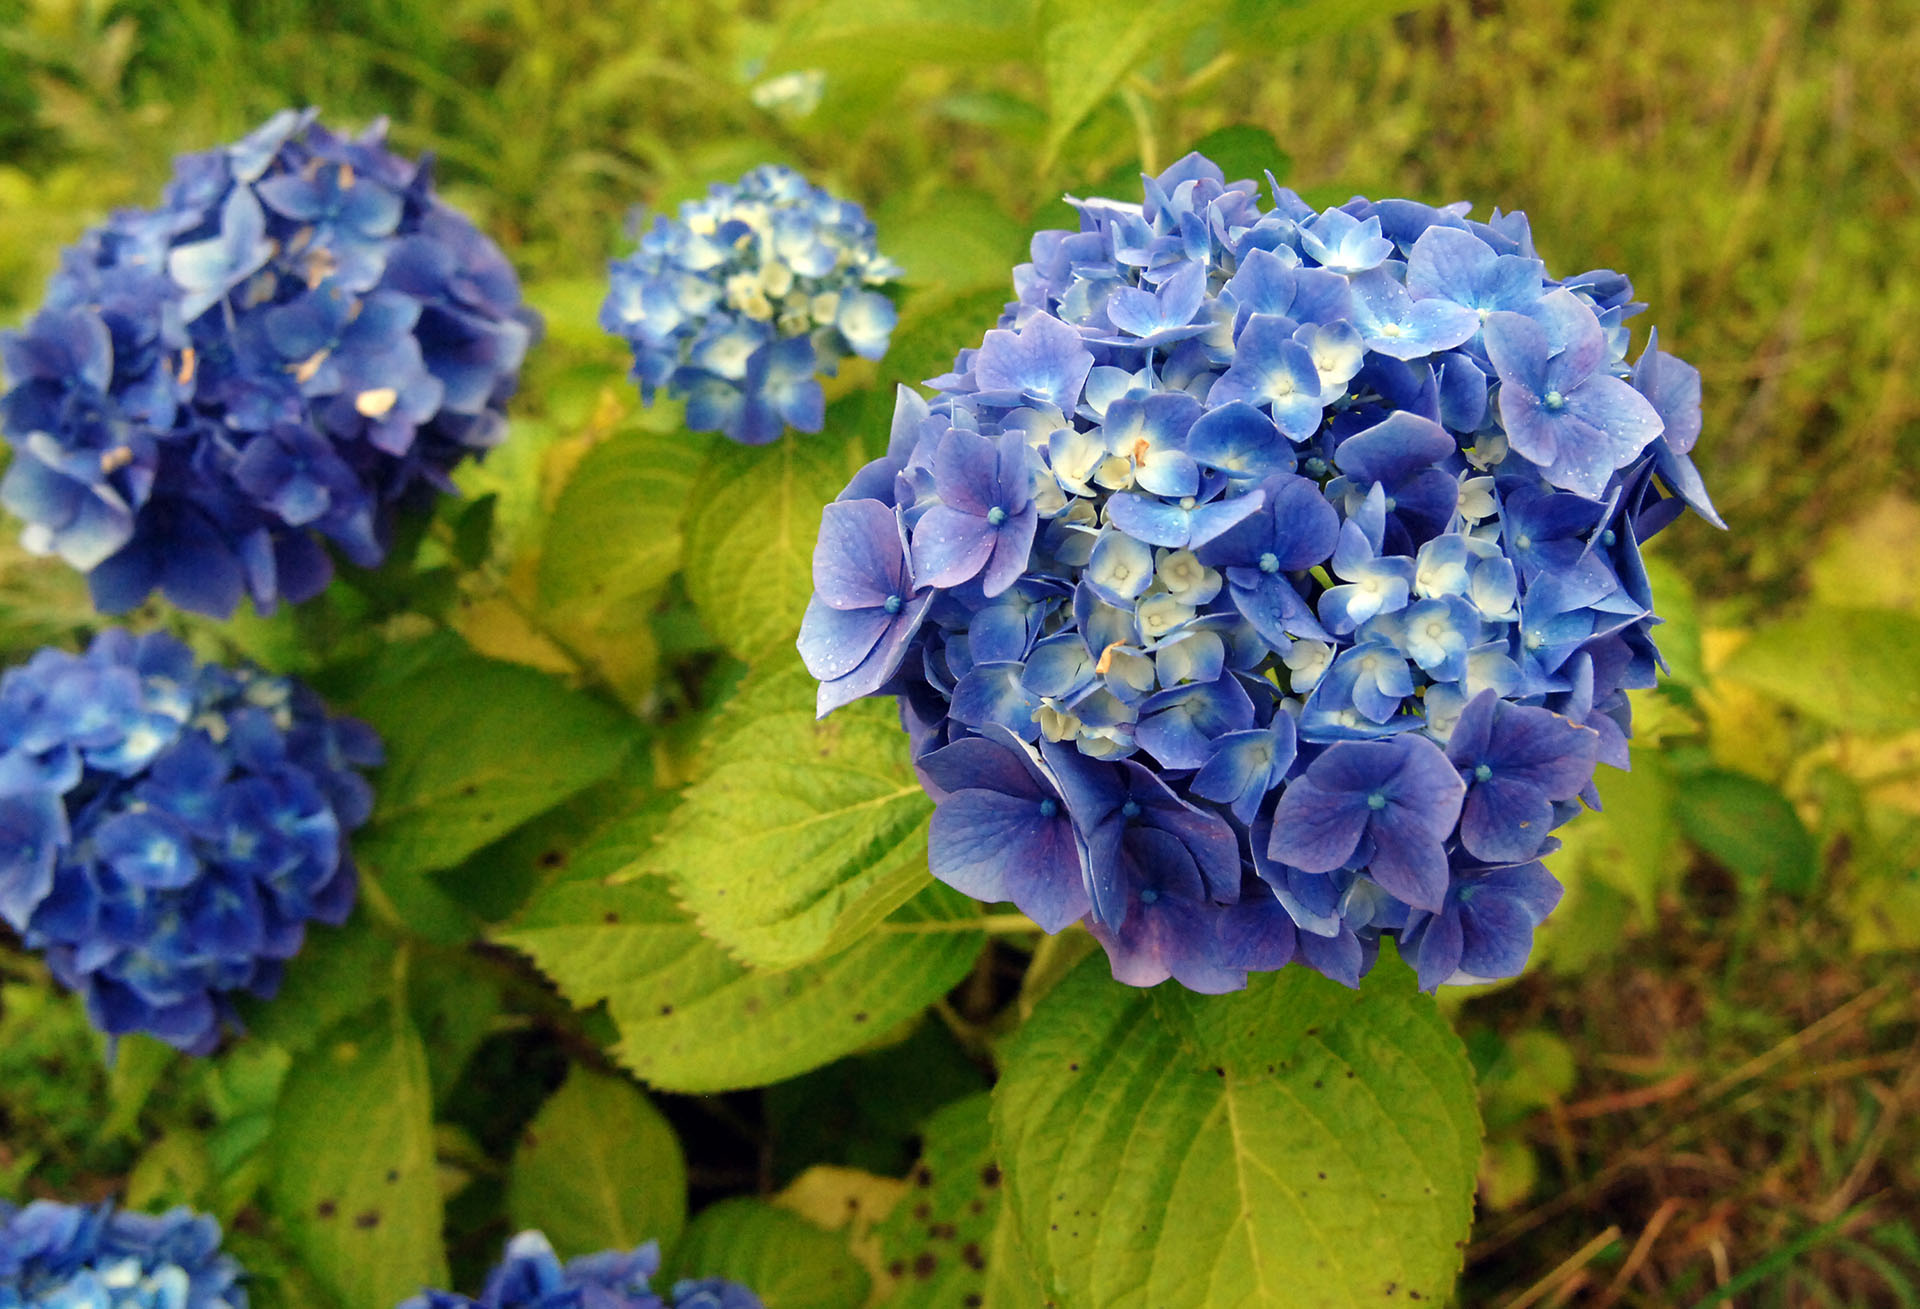 Las azaleas se pueden convertir en azules agregando sales de hierro y aluminio al compost de su cultivo (Jun Sato/WireImage)